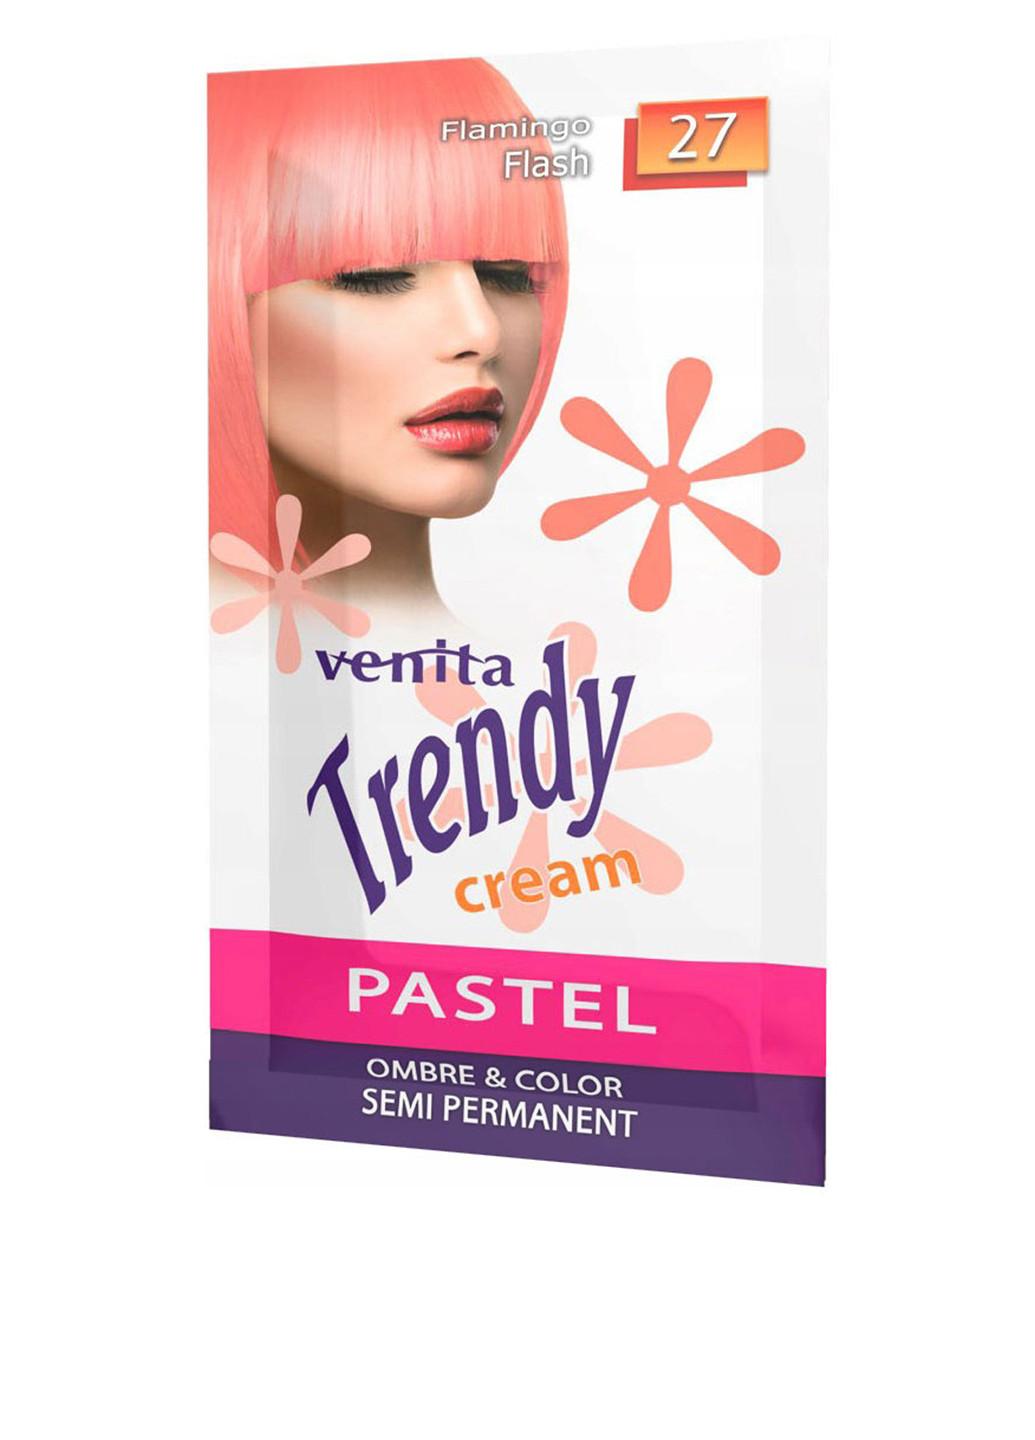 Крем-фарба для волосся Trendy Cream №27 Flamingo Flash, 35 г Venita (202409133)